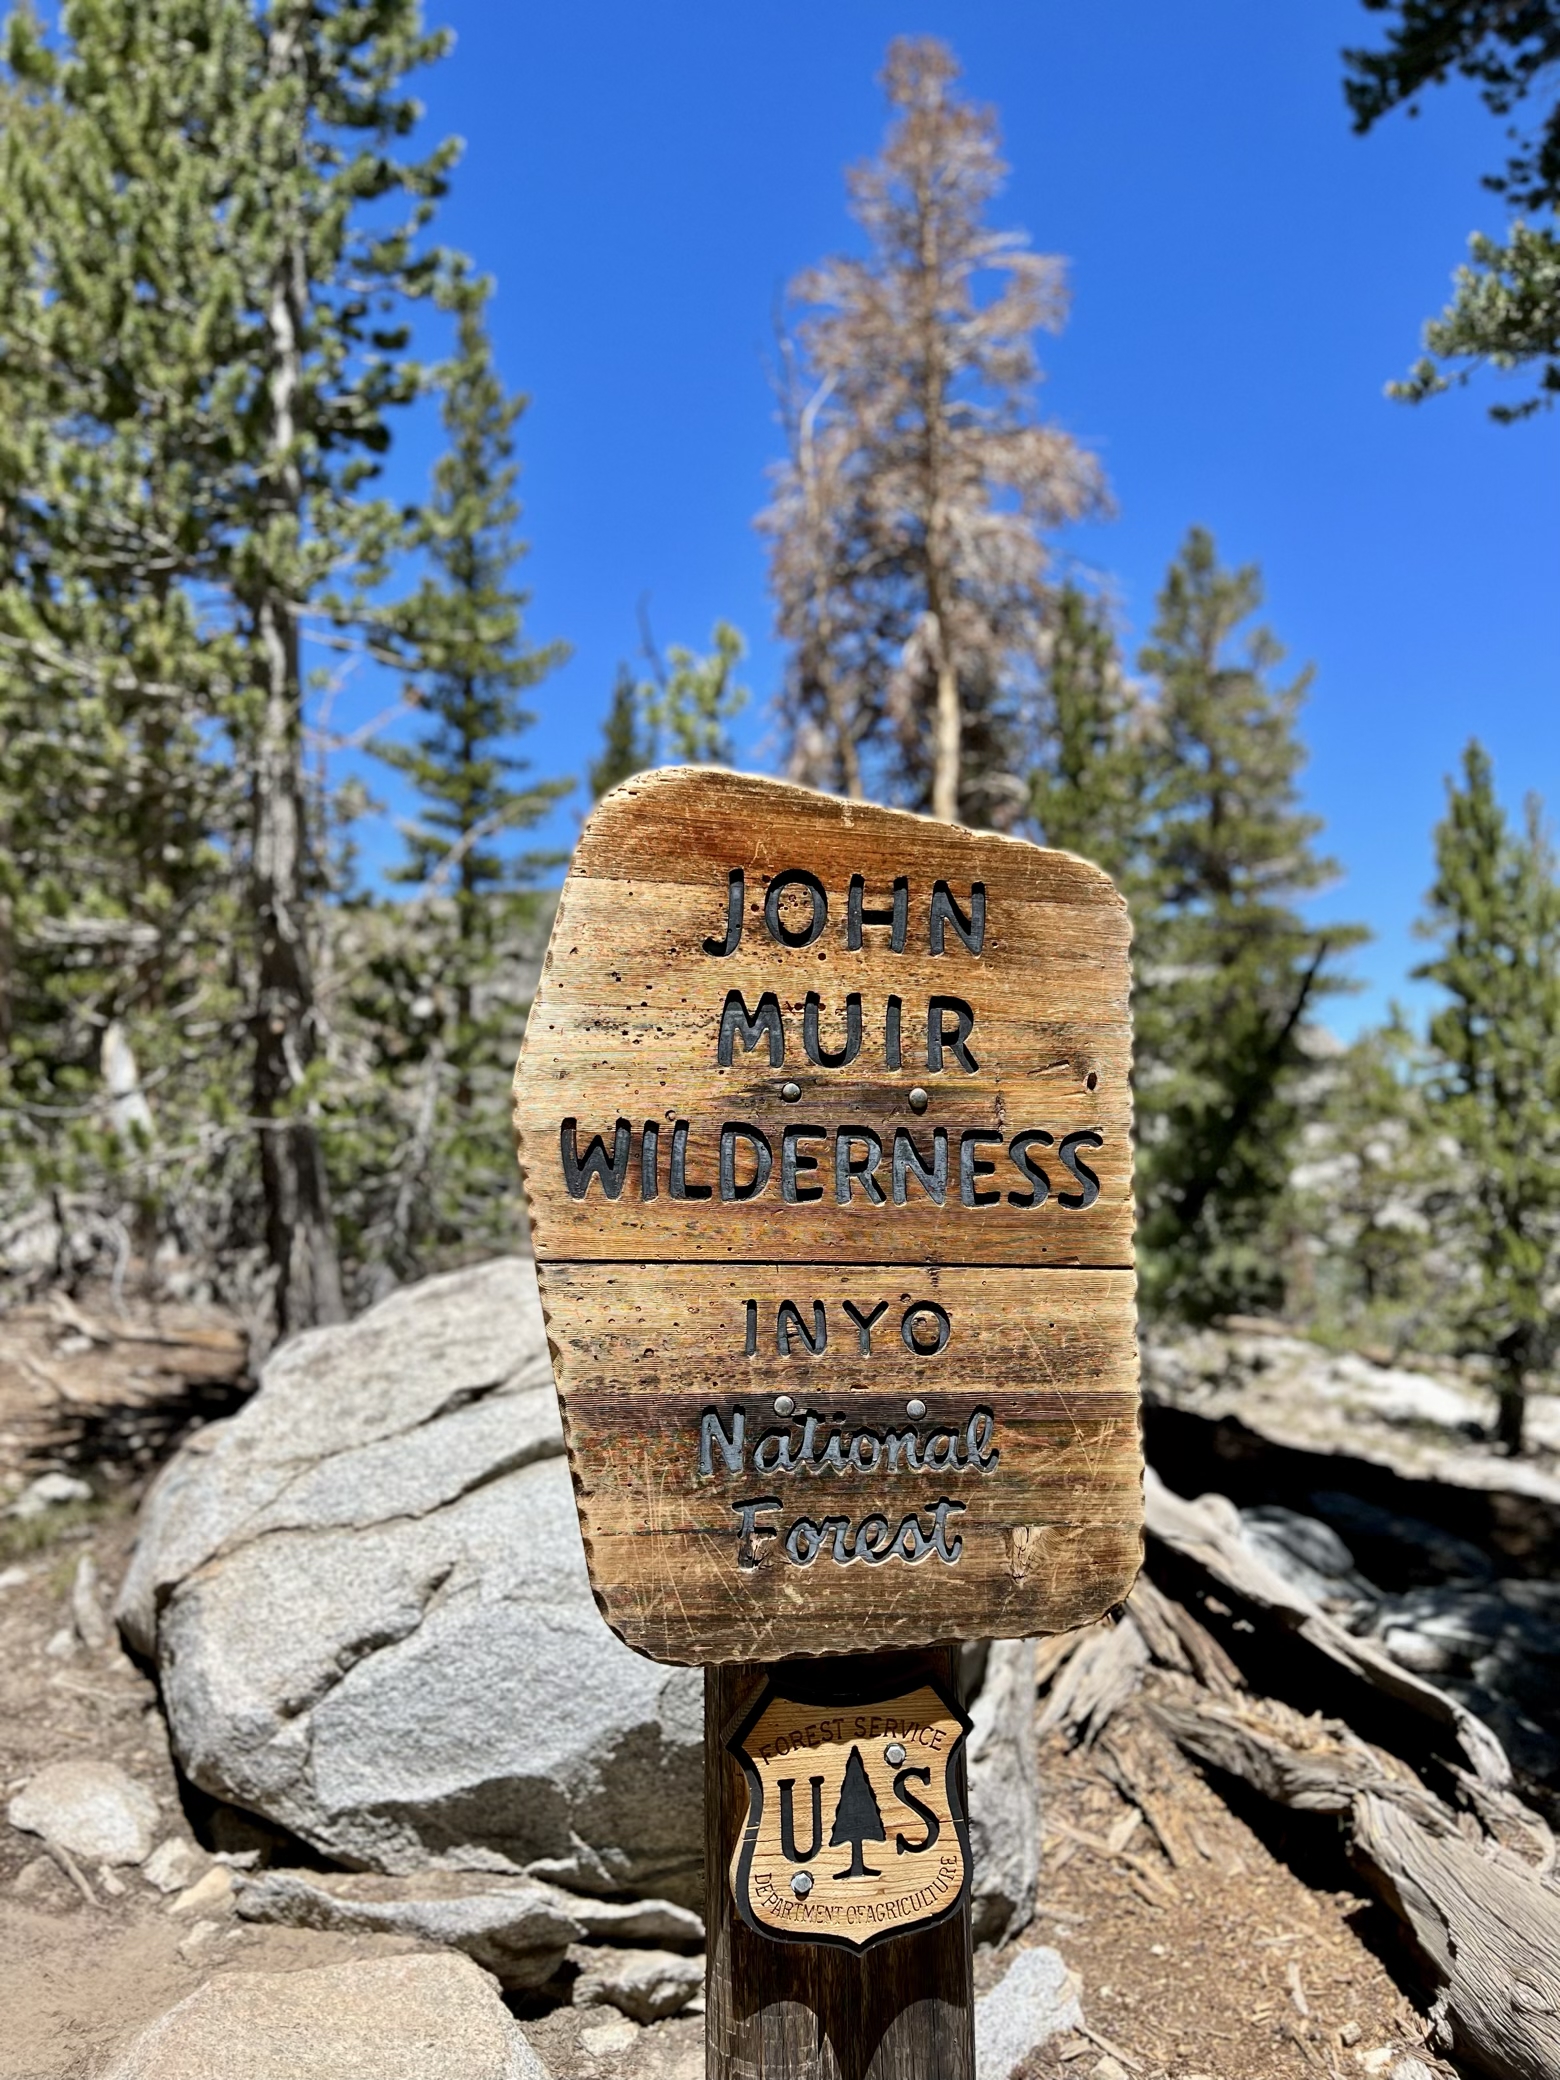 Exiting the John Muir Wilderness